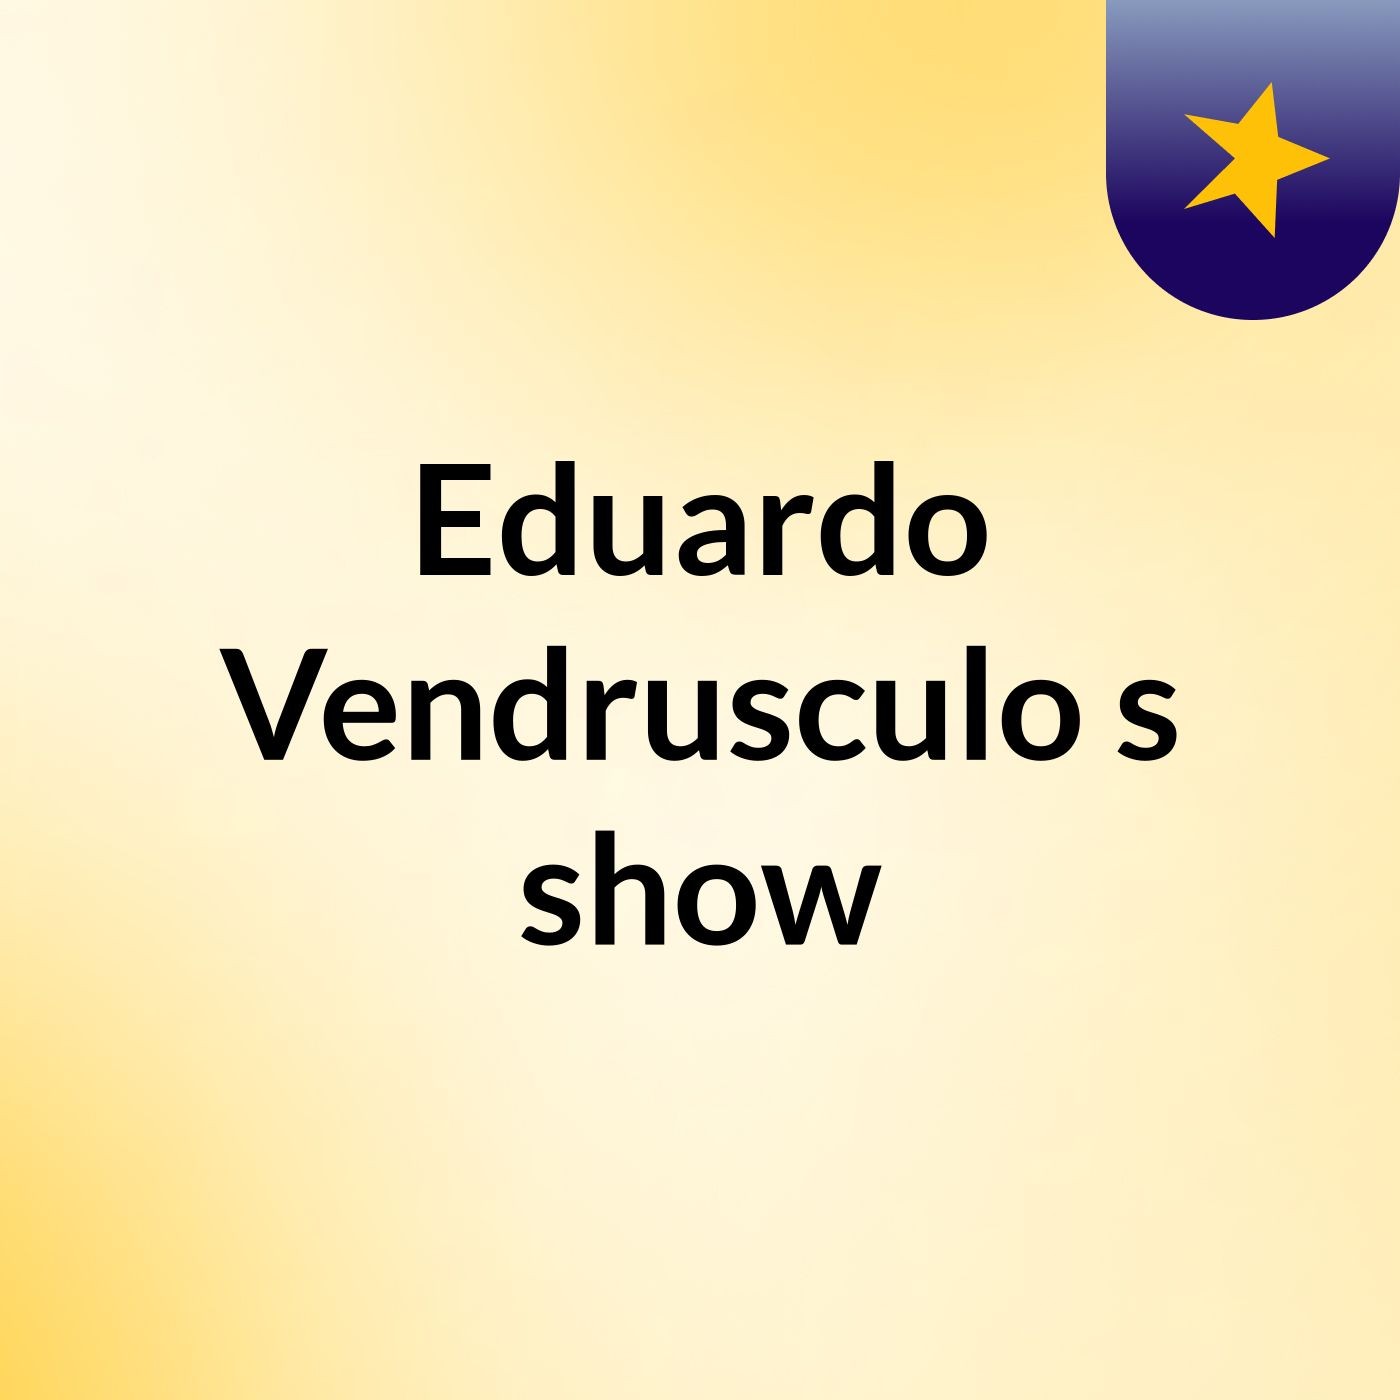 Eduardo Vendrusculo's show